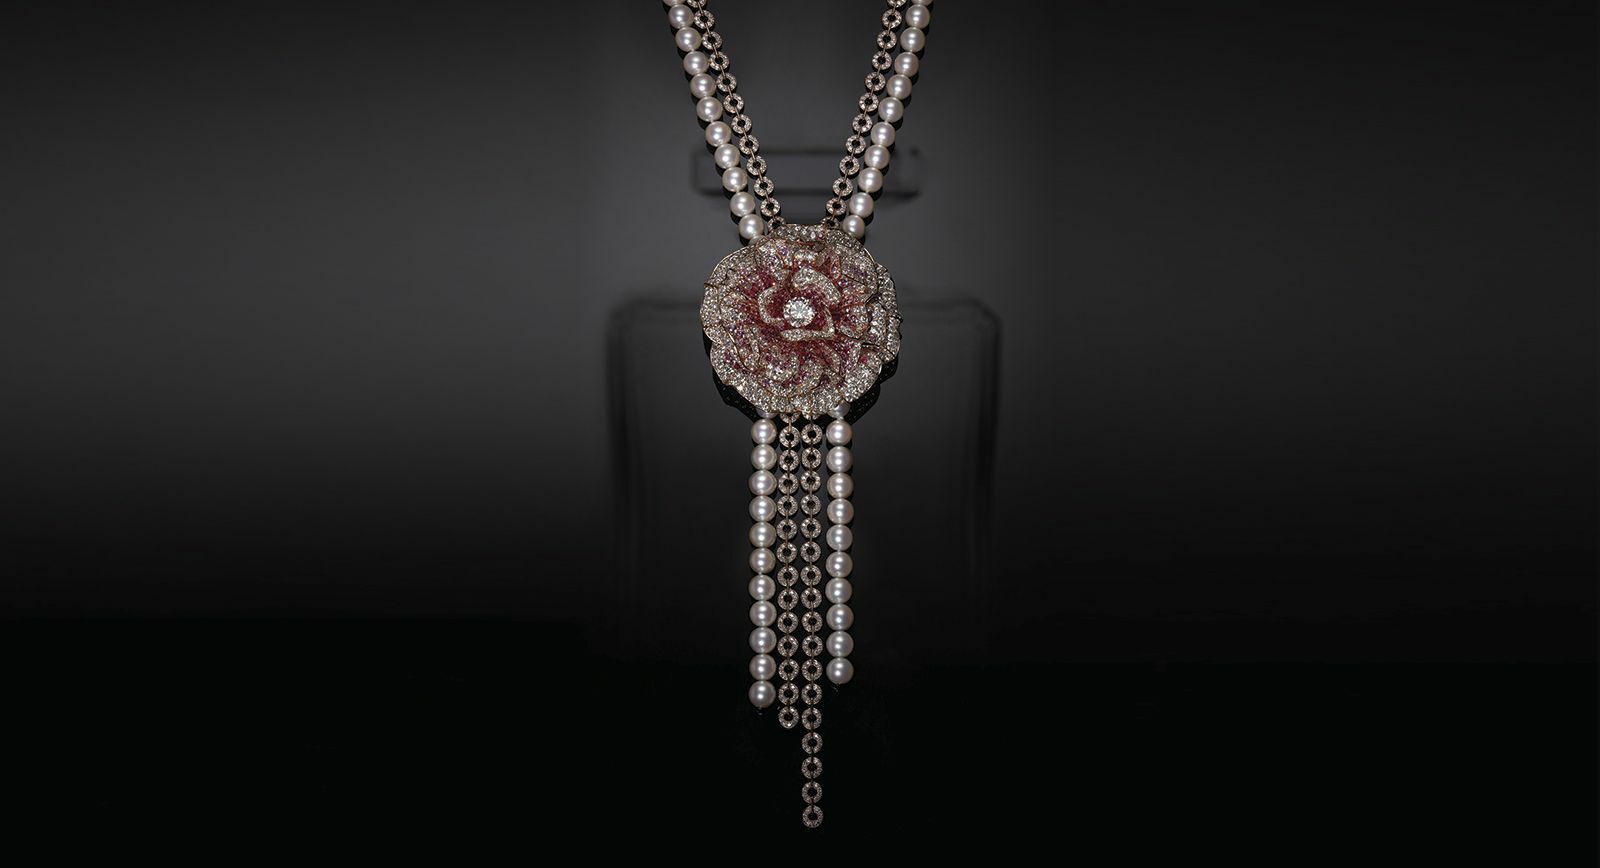 Коллекция высокого ювелирного искусства Chanel N ° 5, вдохновленная культовым парфюмом Chanel N ° 5